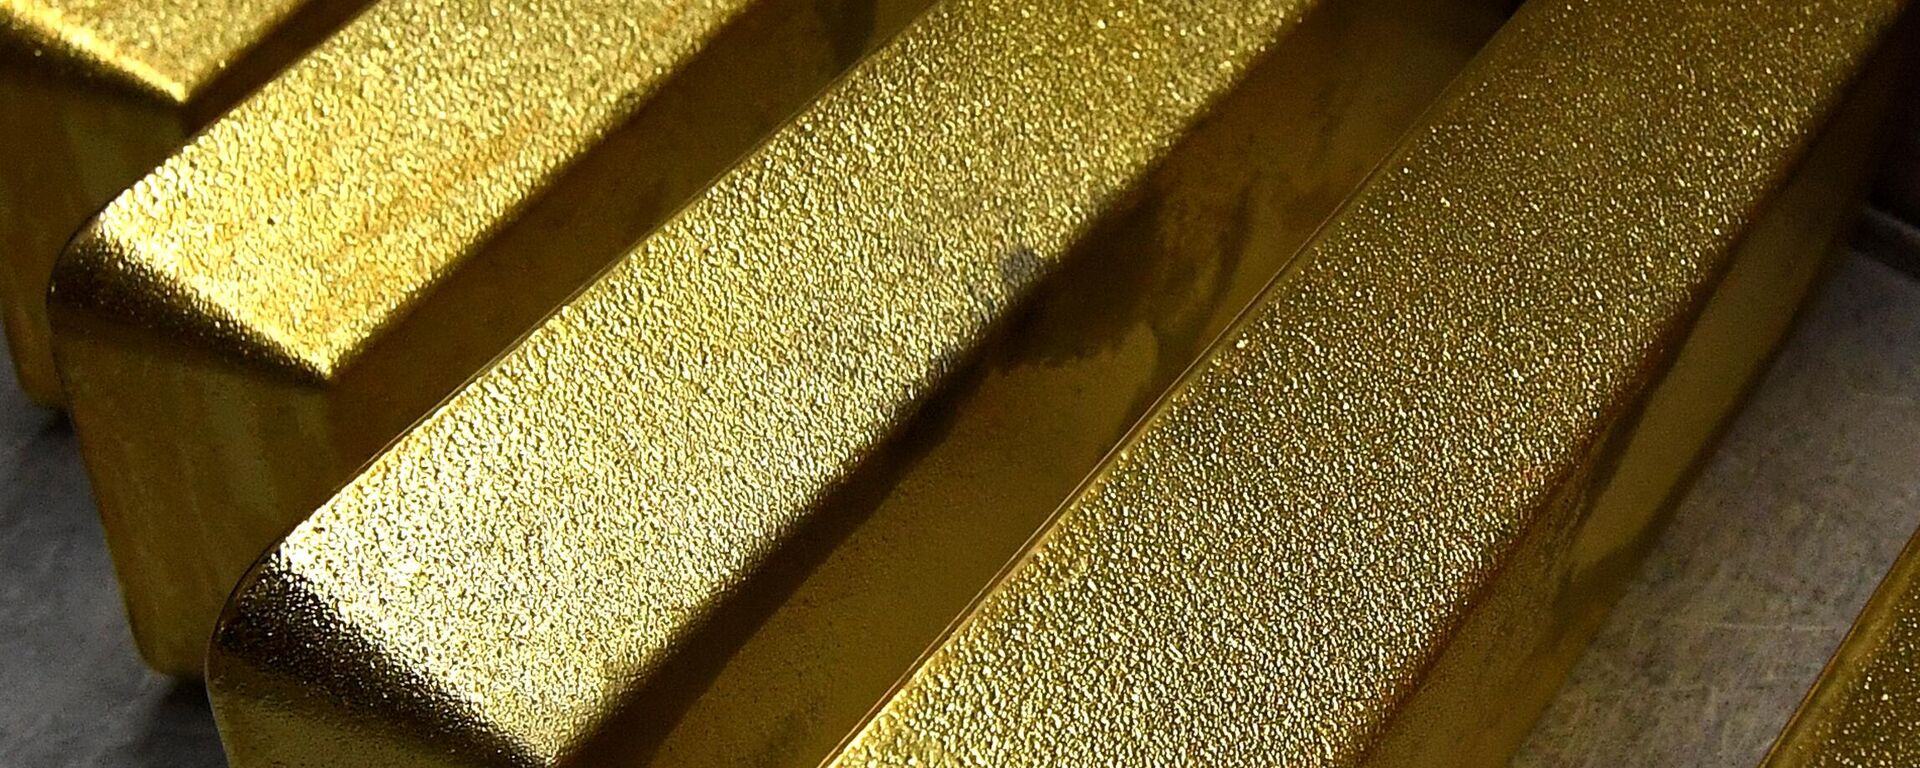 Lingotes de oro, imagen referencial  - Sputnik Mundo, 1920, 15.07.2022